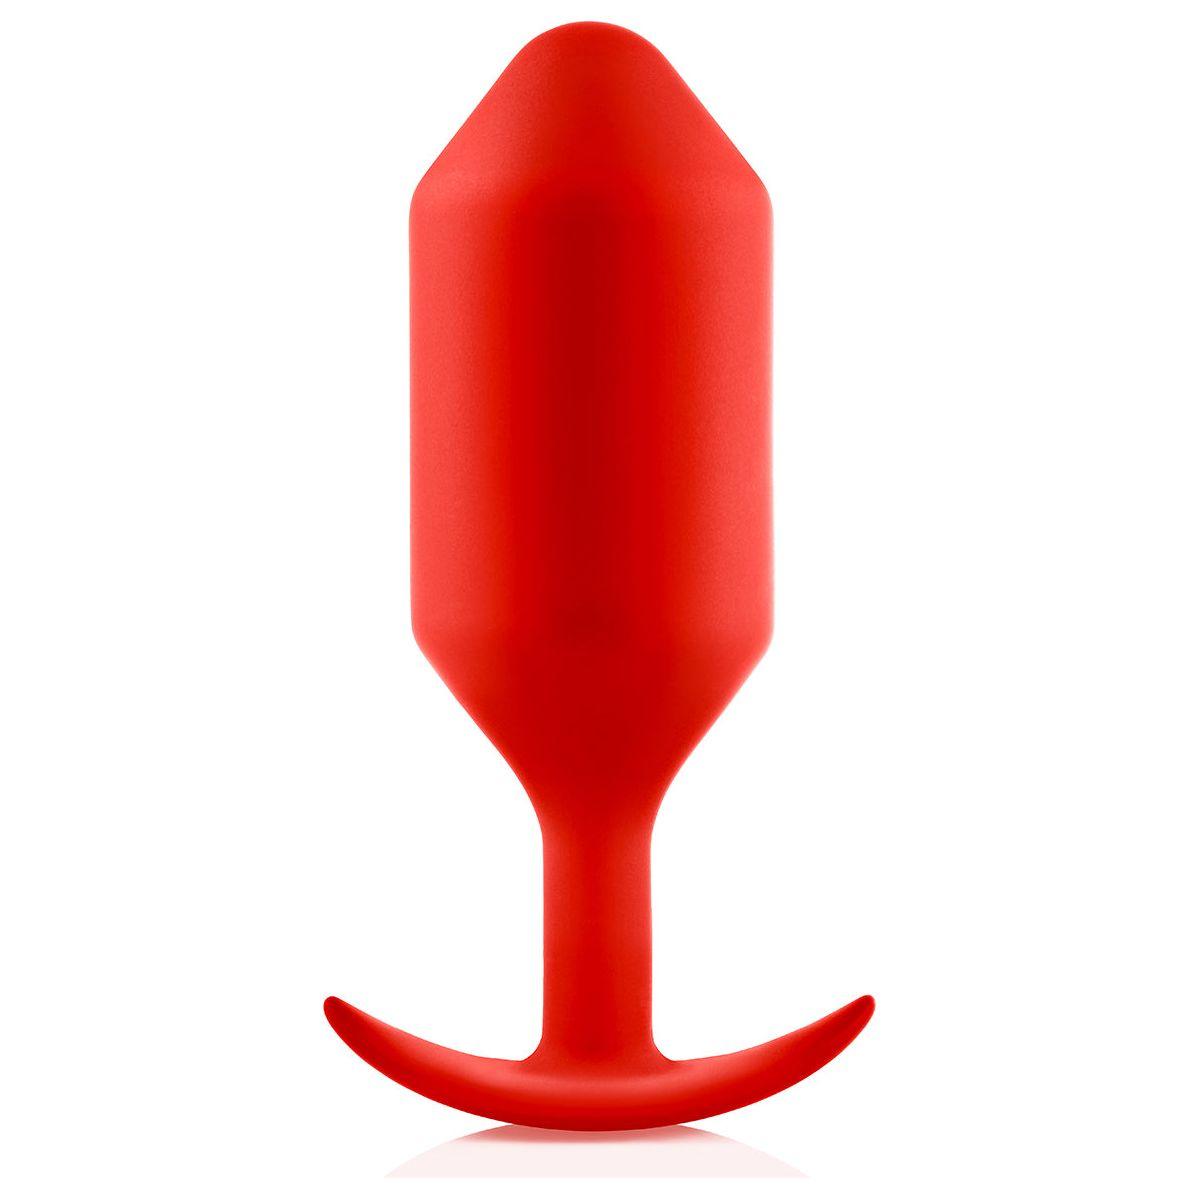 B-Vibe Snug Plug 6 (XXXL) - Red - shop enby